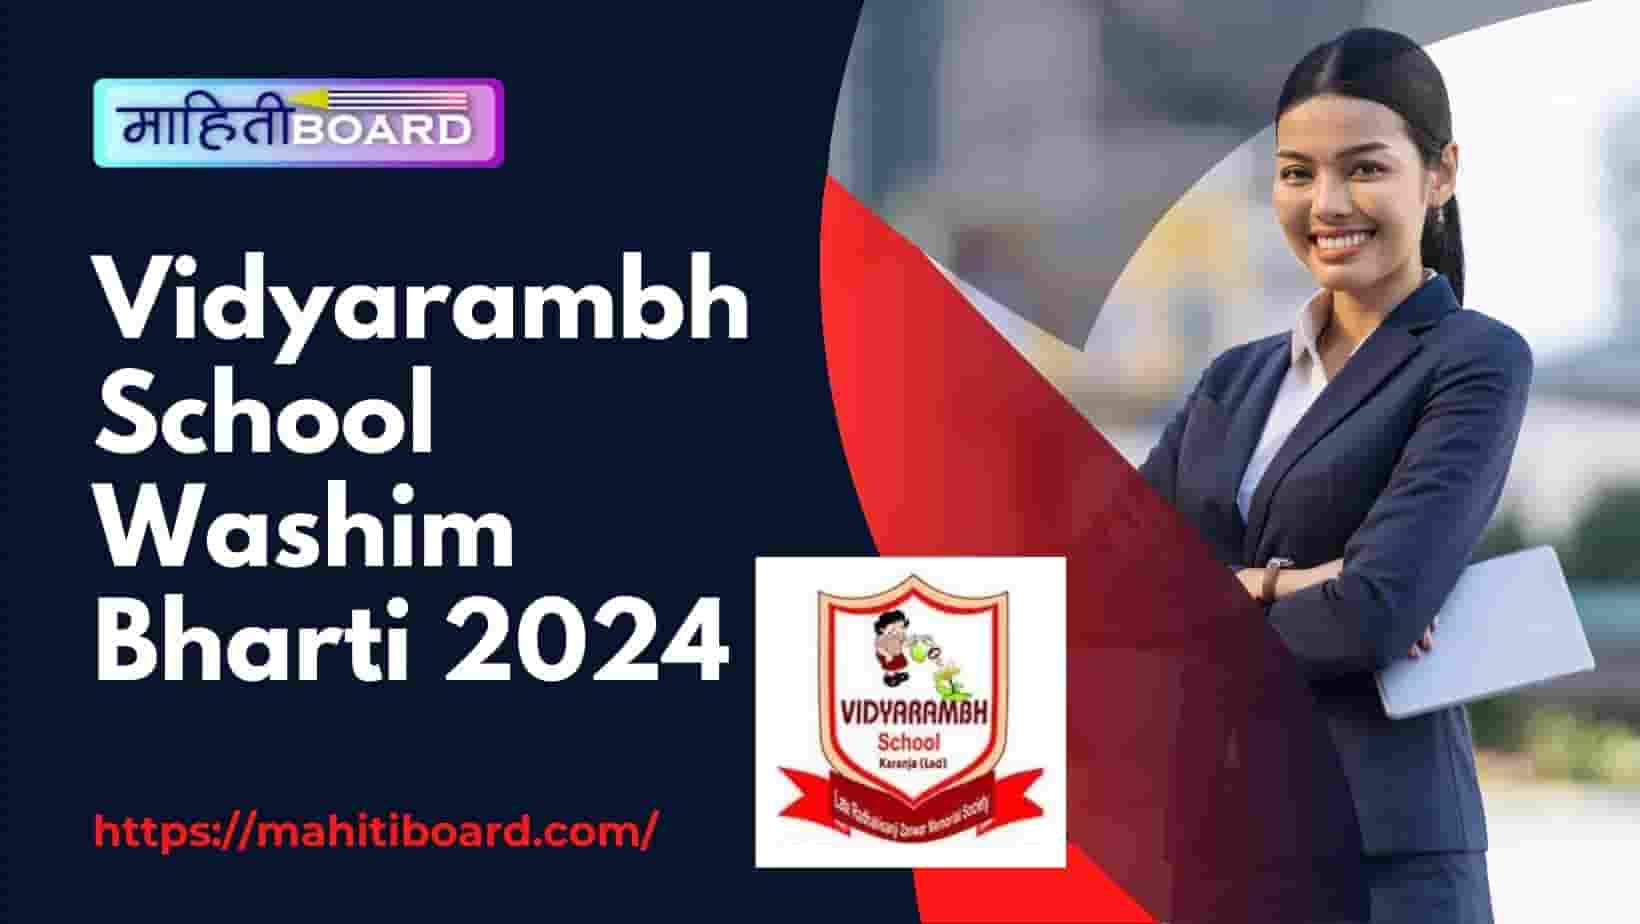 Vidyarambh School Washim Bharti 2024